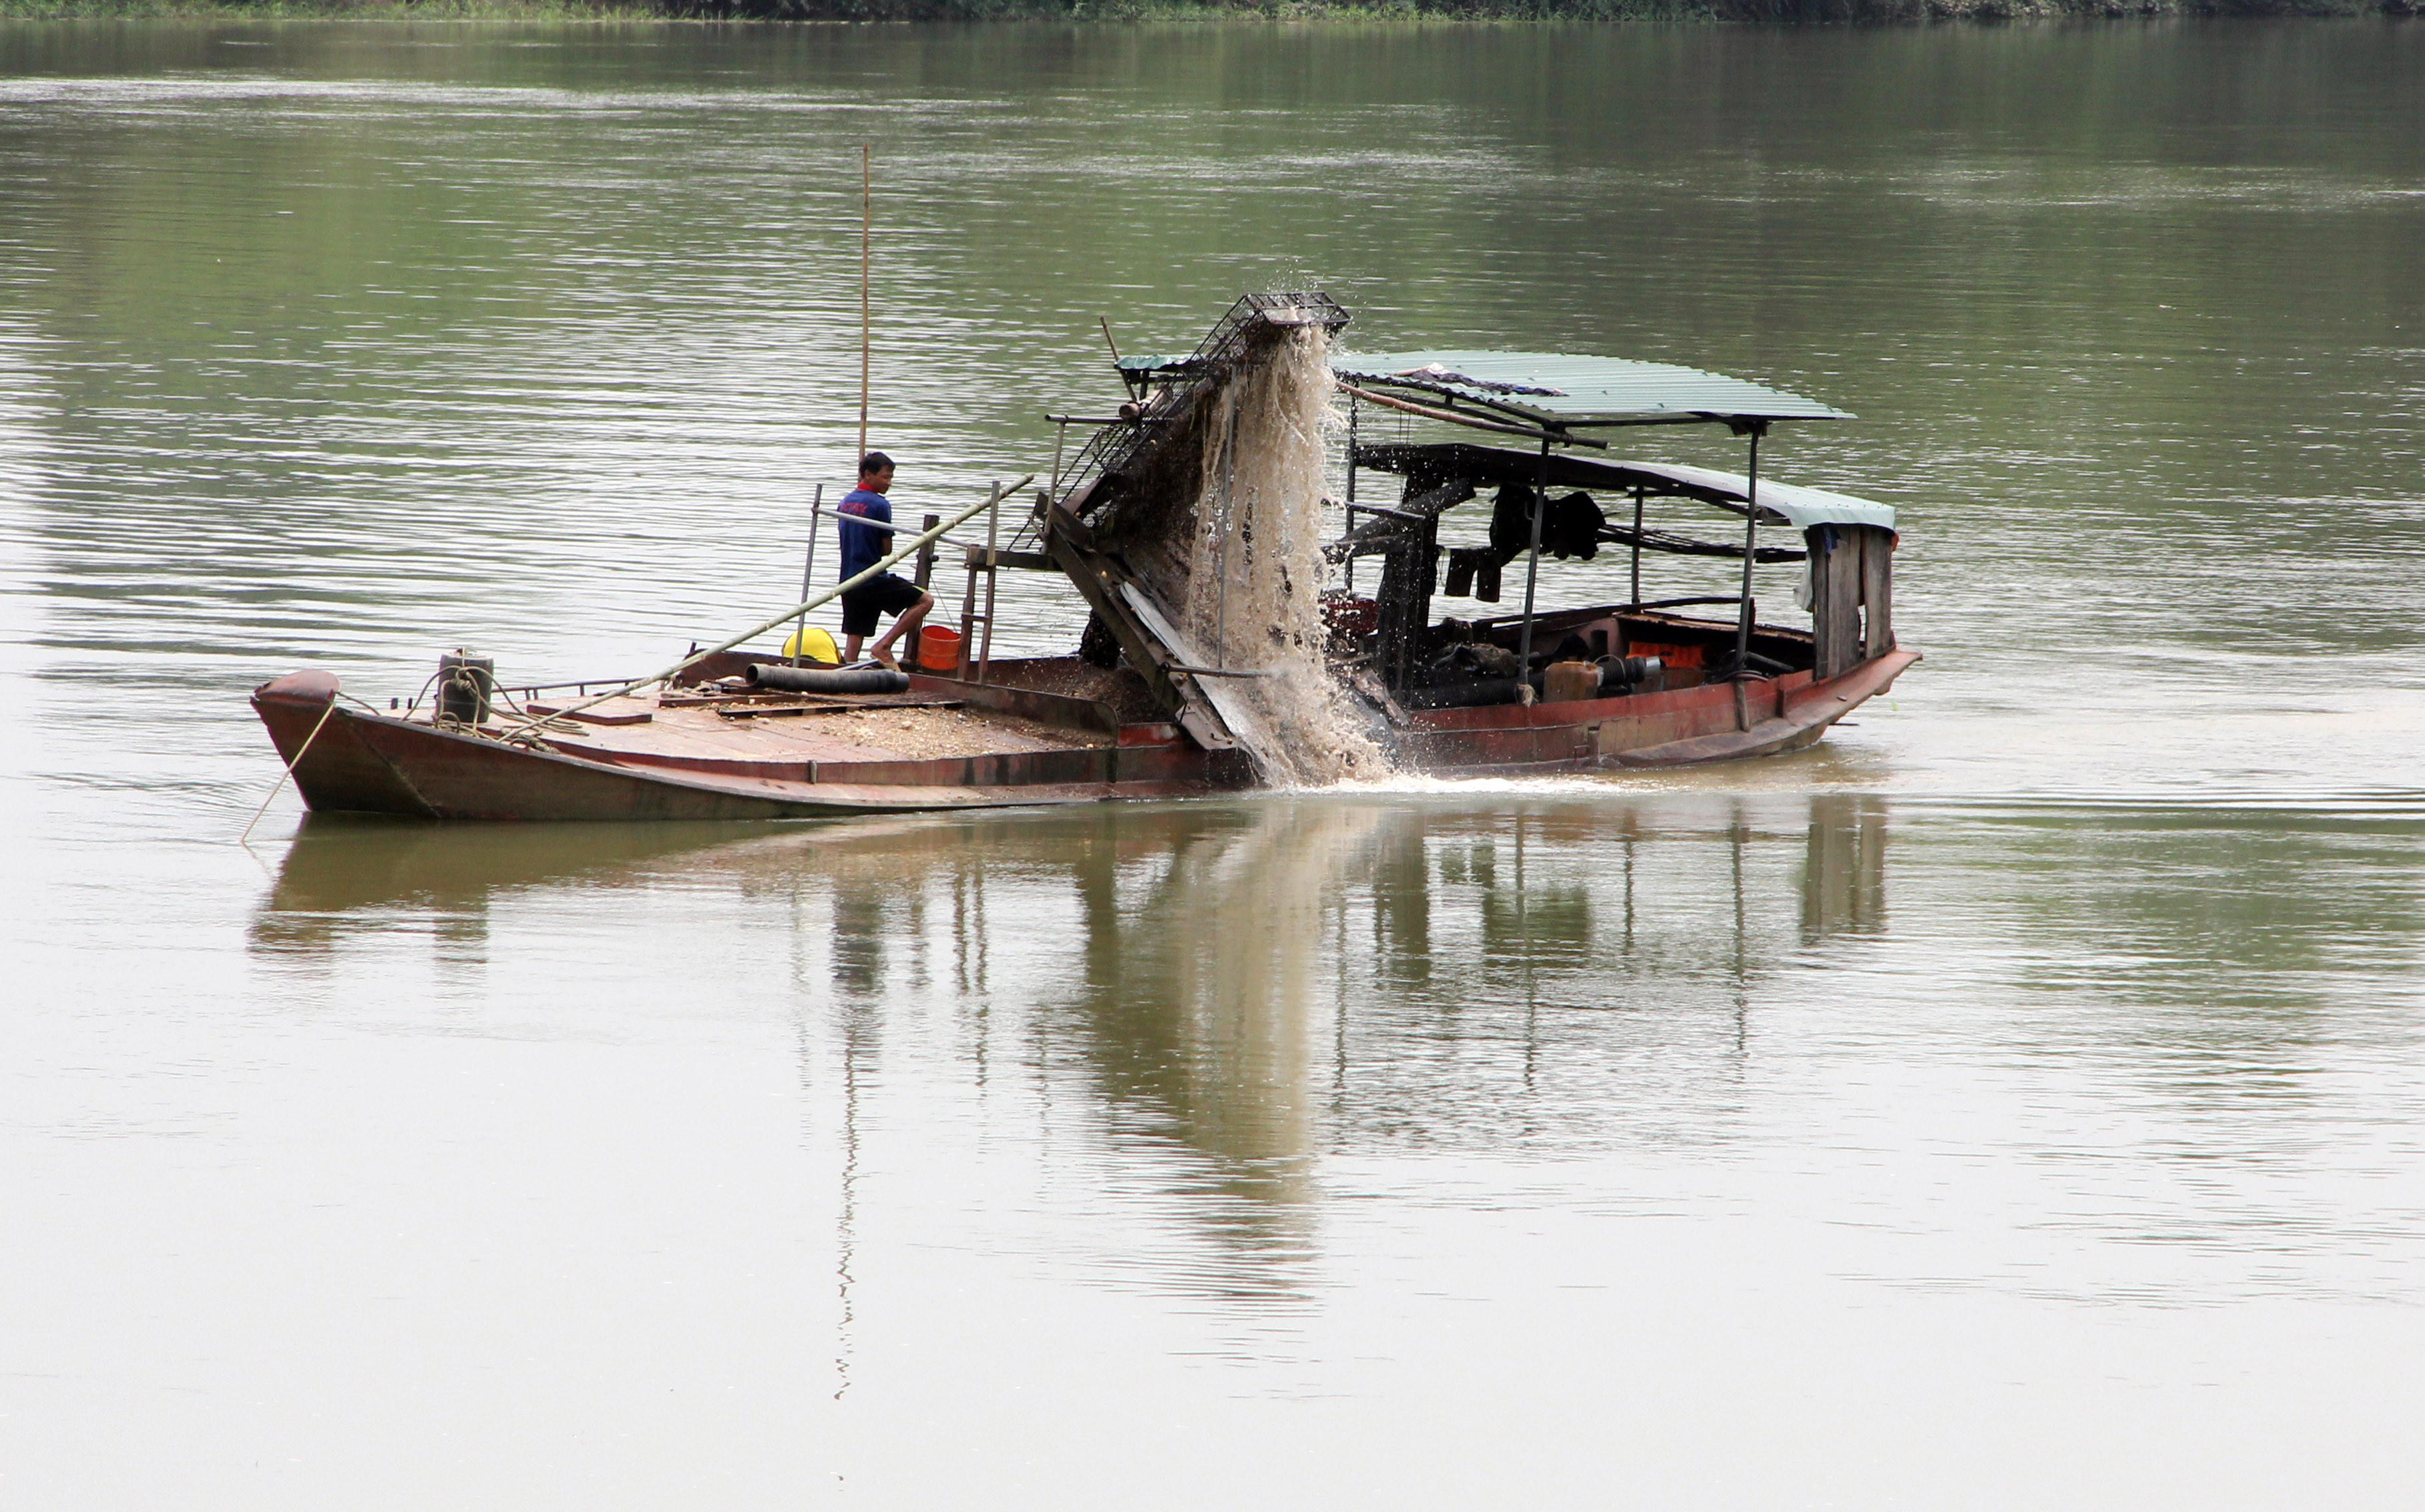 Việc cát tặc hoành hành trên sông Lam đang gây ra rất nhiều hệ lụy. Ảnh: Hồ Phương